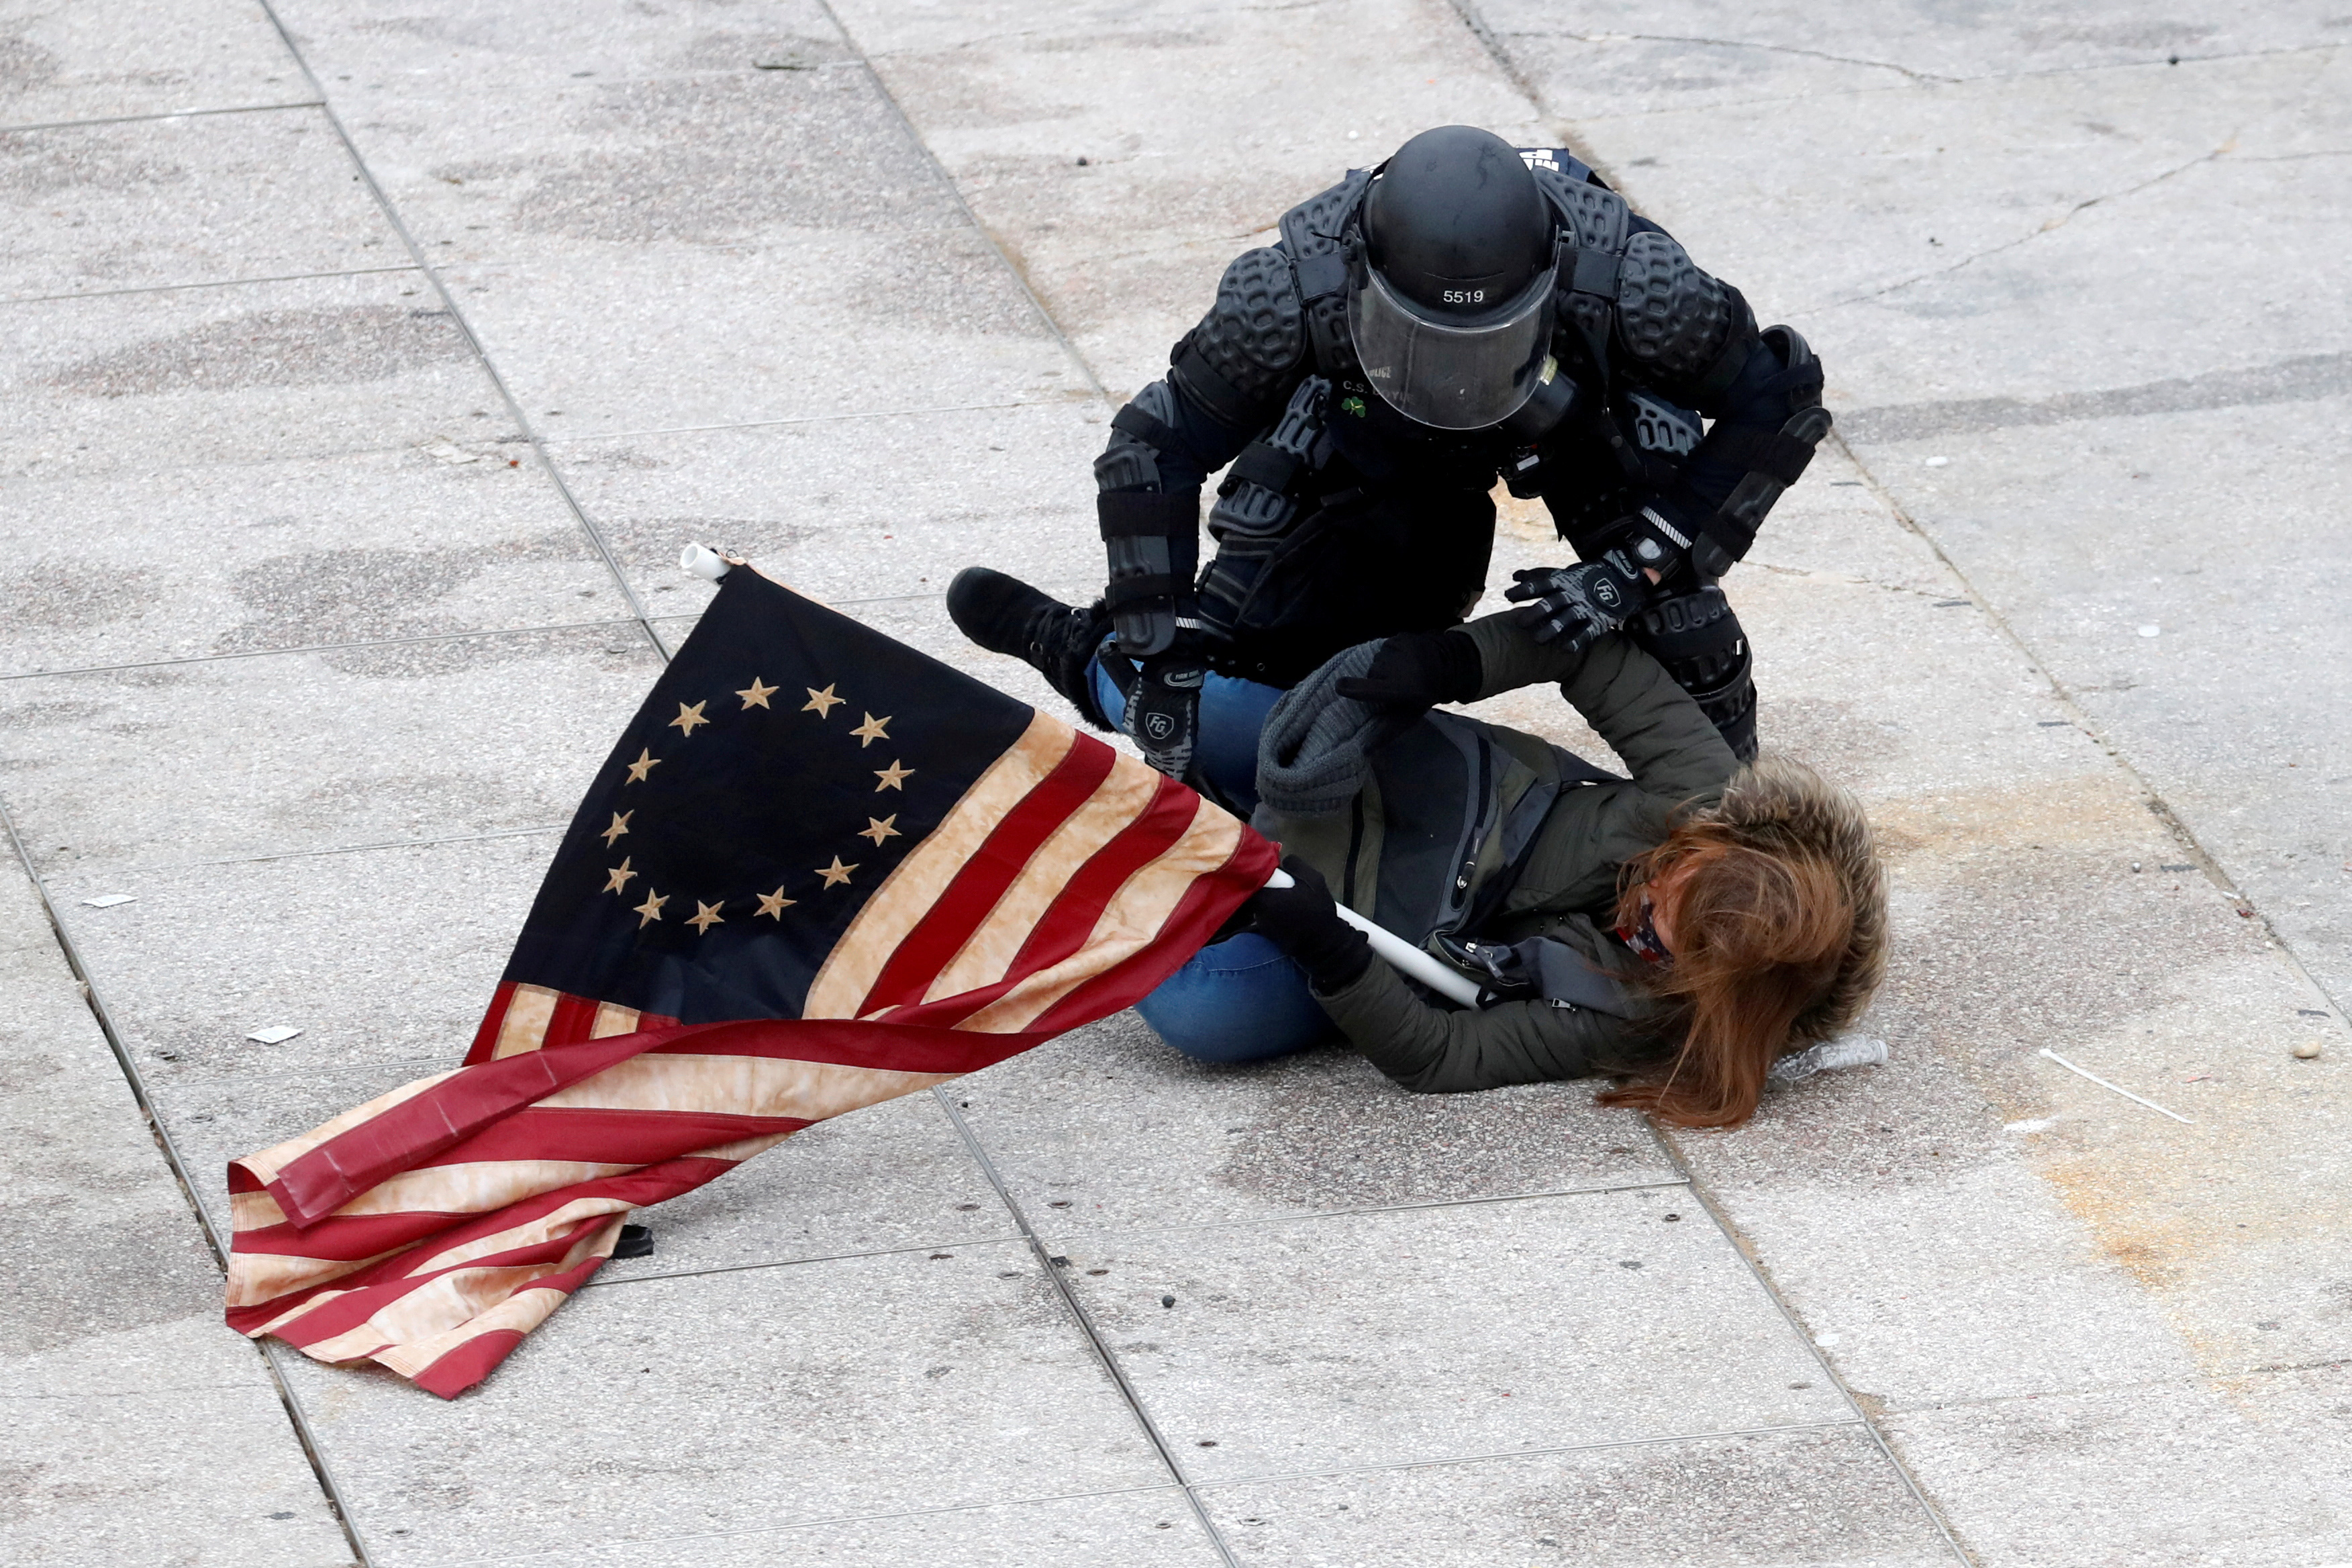 Epilogo Um-policial-detem-um-manifestante-pro-trump-dirante-a-invasao-ao-capitolio-dos-eua-395052